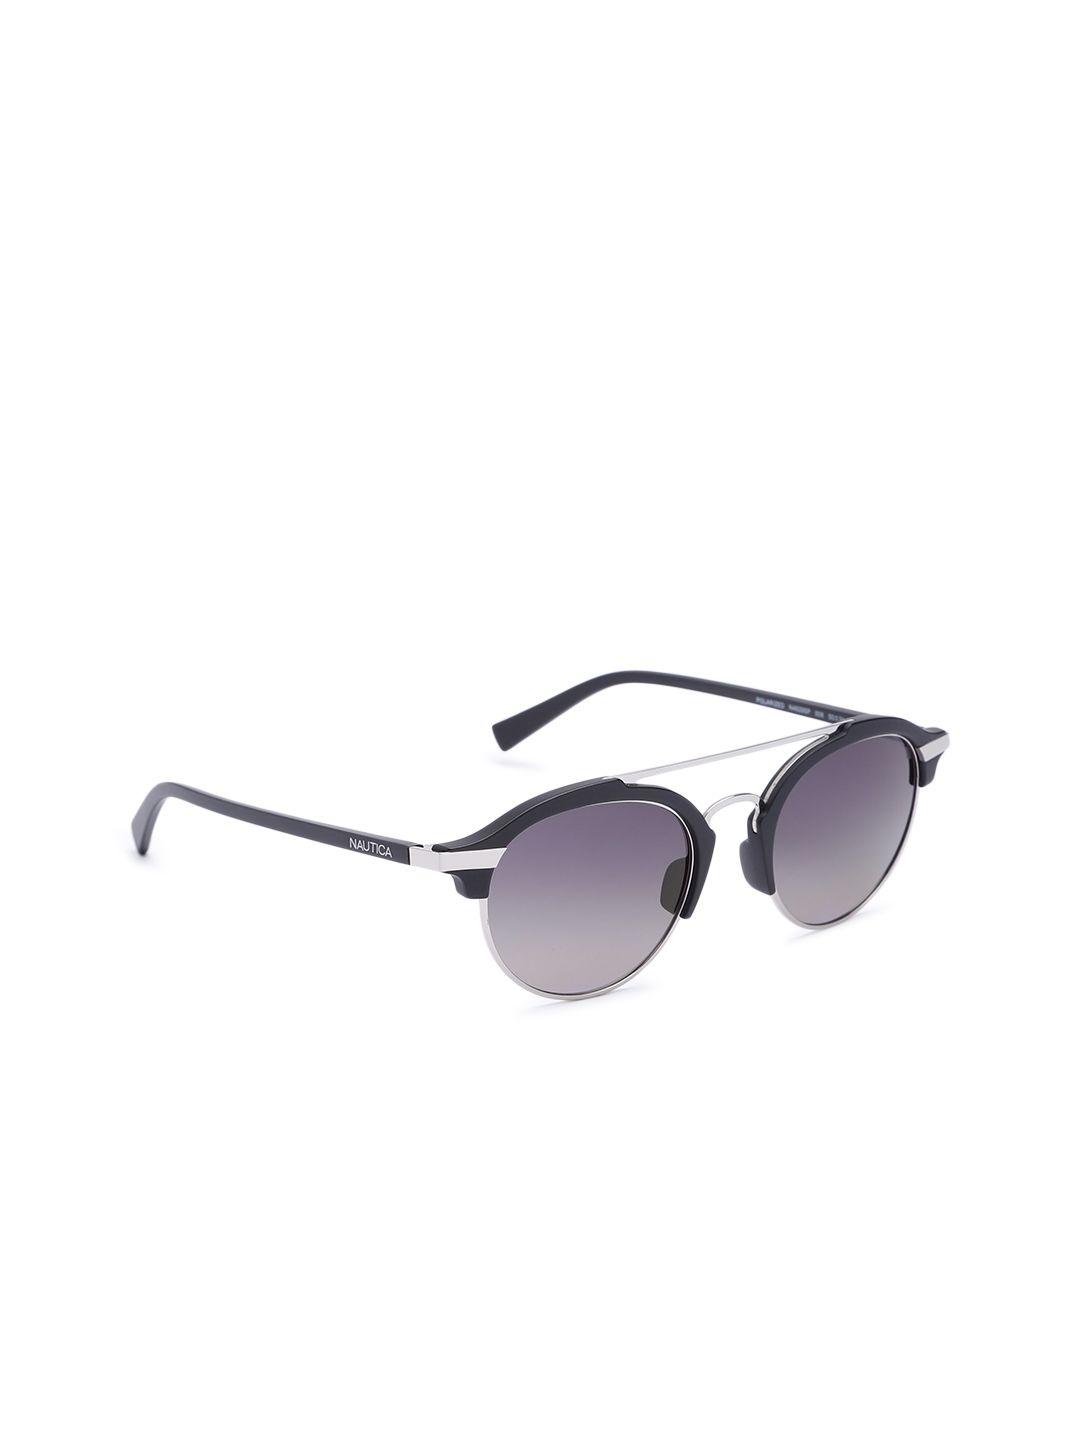 nautica men blue lens & black browline sunglasses with uv protected lens 4629p 008 50 s